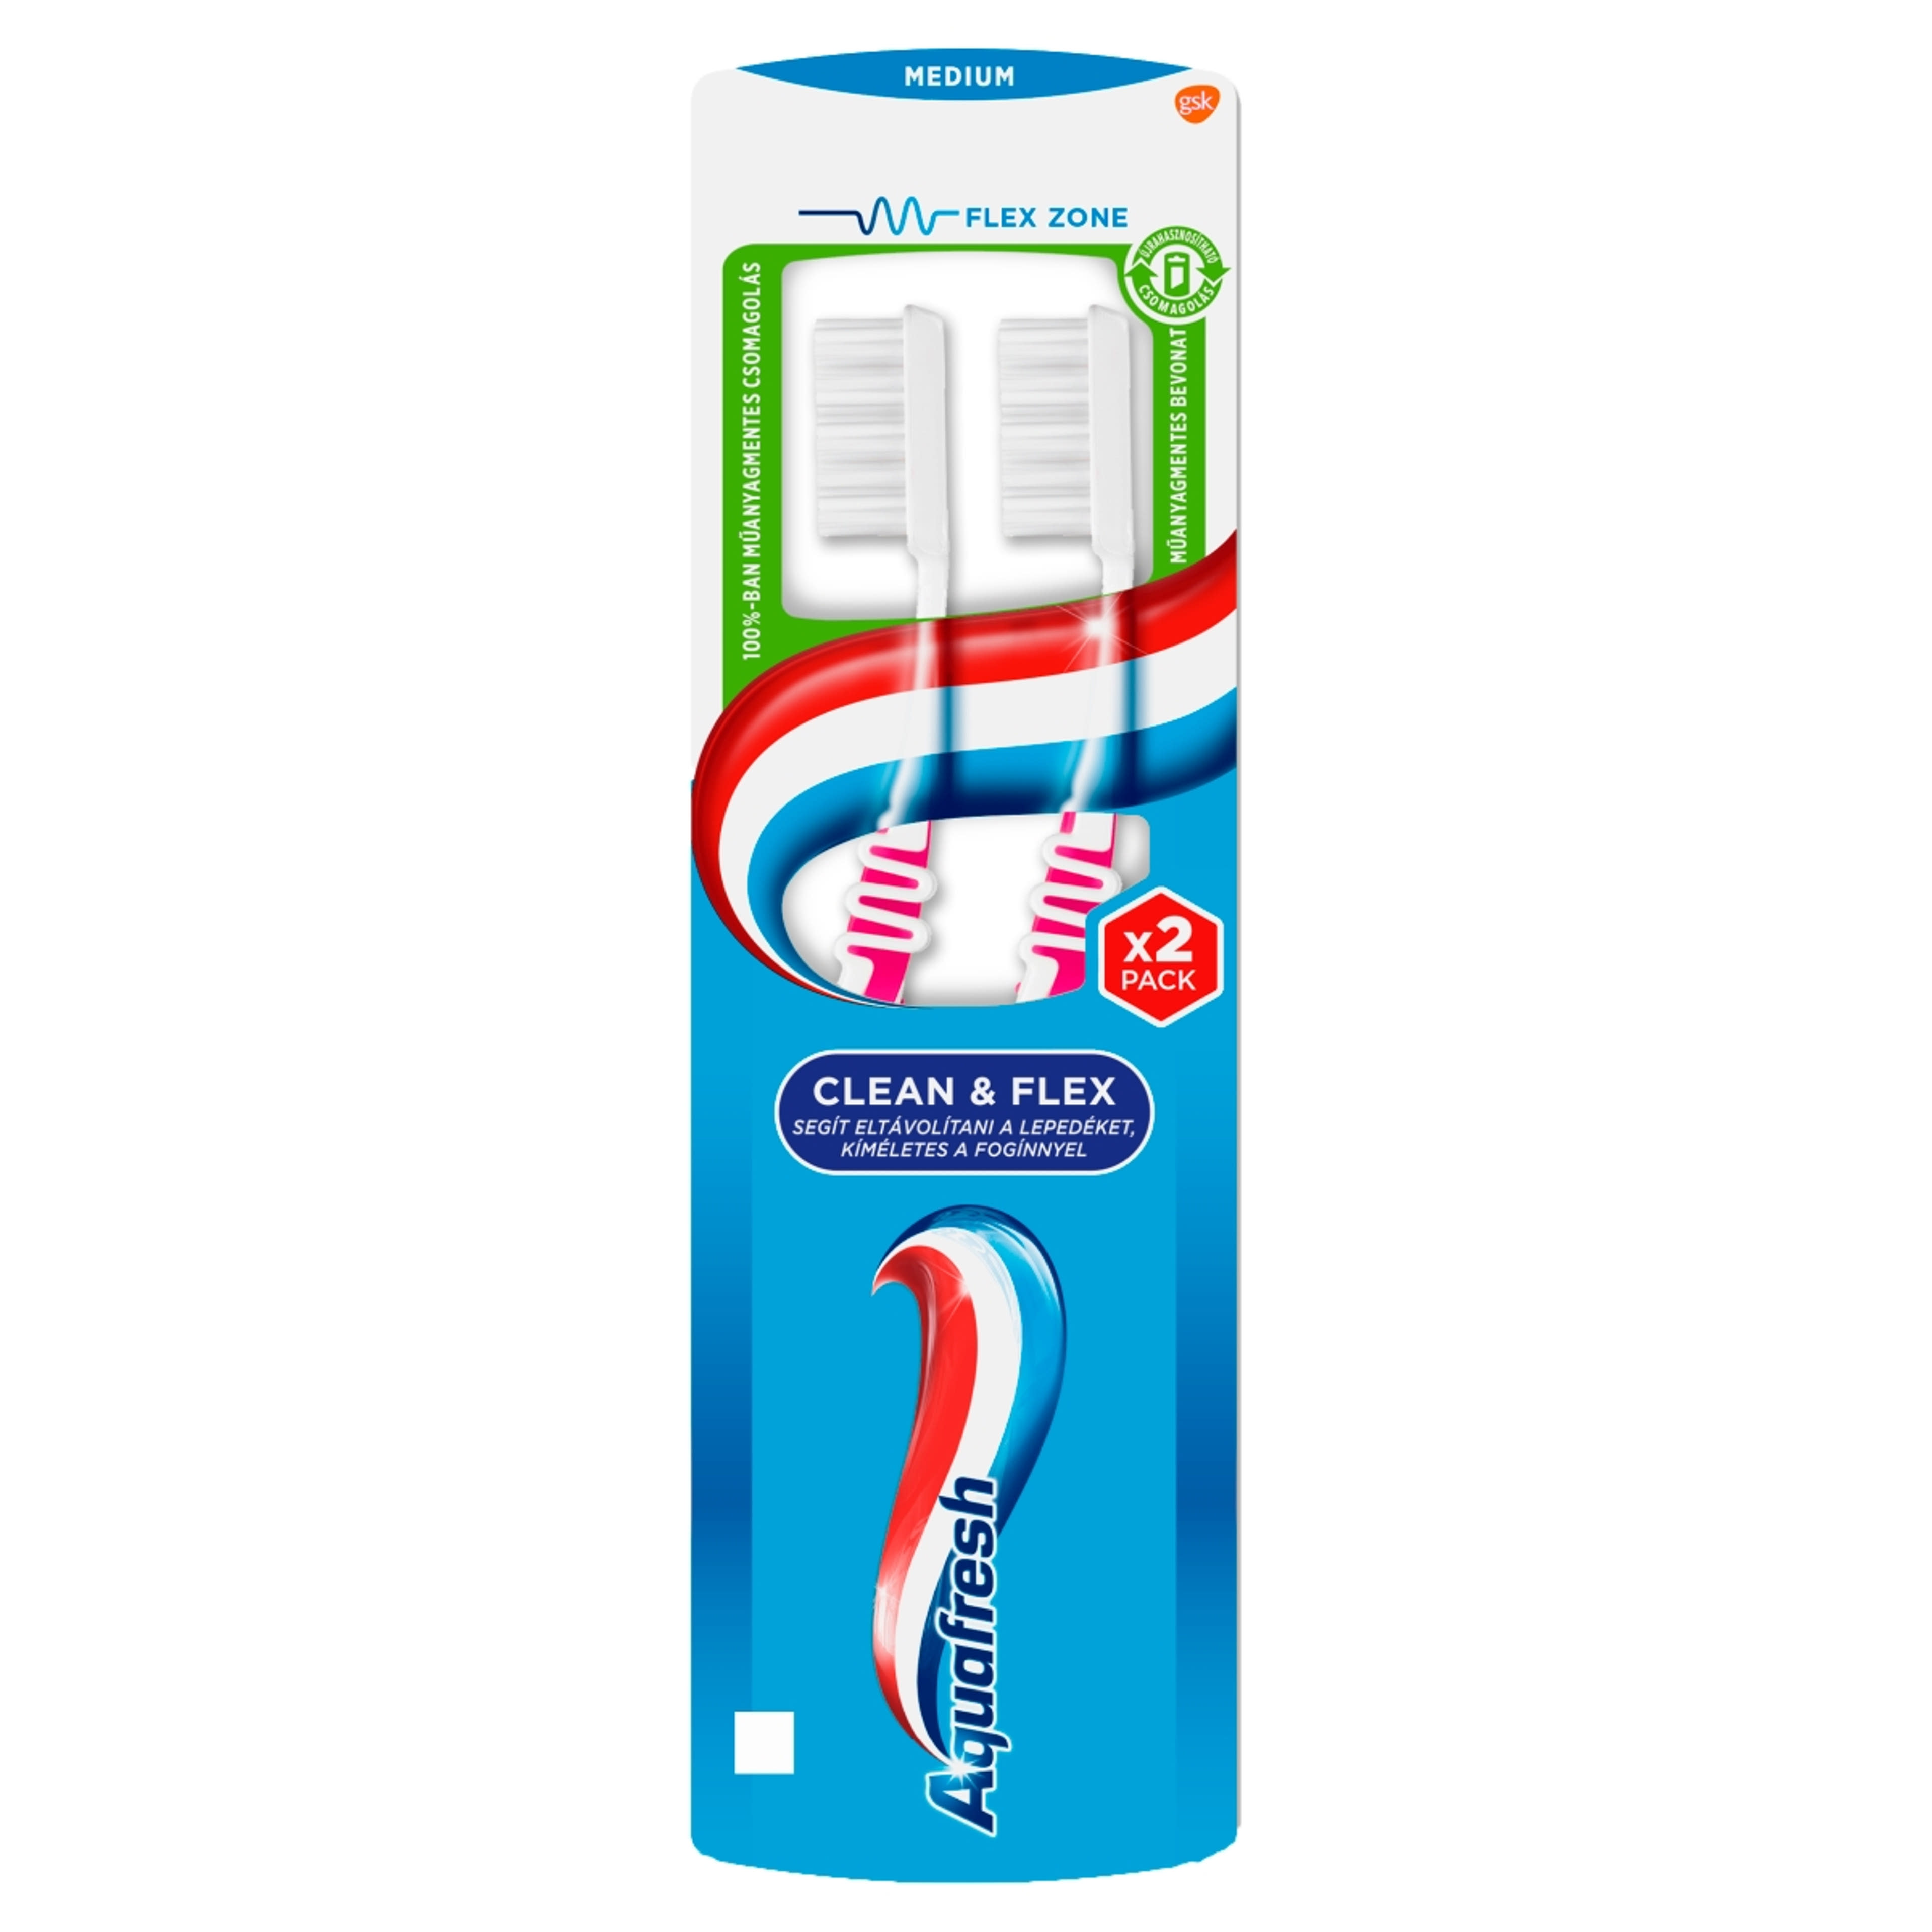 Aquafresh  Clean & Flex duopack fogkefe közepesen erős sörtékkel - 2 db